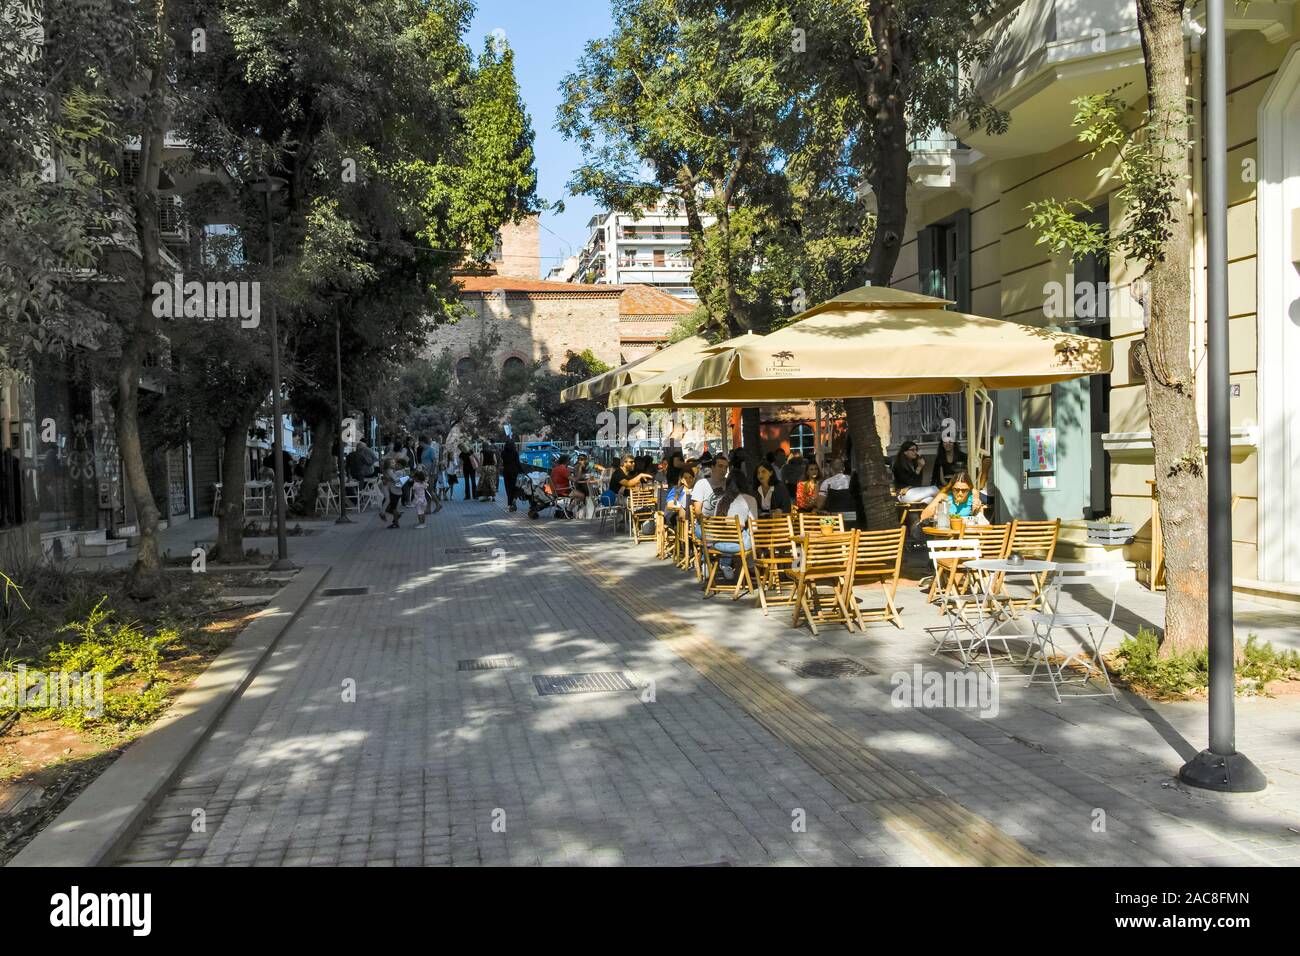 THESSALONIKI, Griechenland - 22. SEPTEMBER 2019: Typische Straße und Gebäude in der Stadt Thessaloniki, Zentralmakedonien, Griechenland Stockfoto